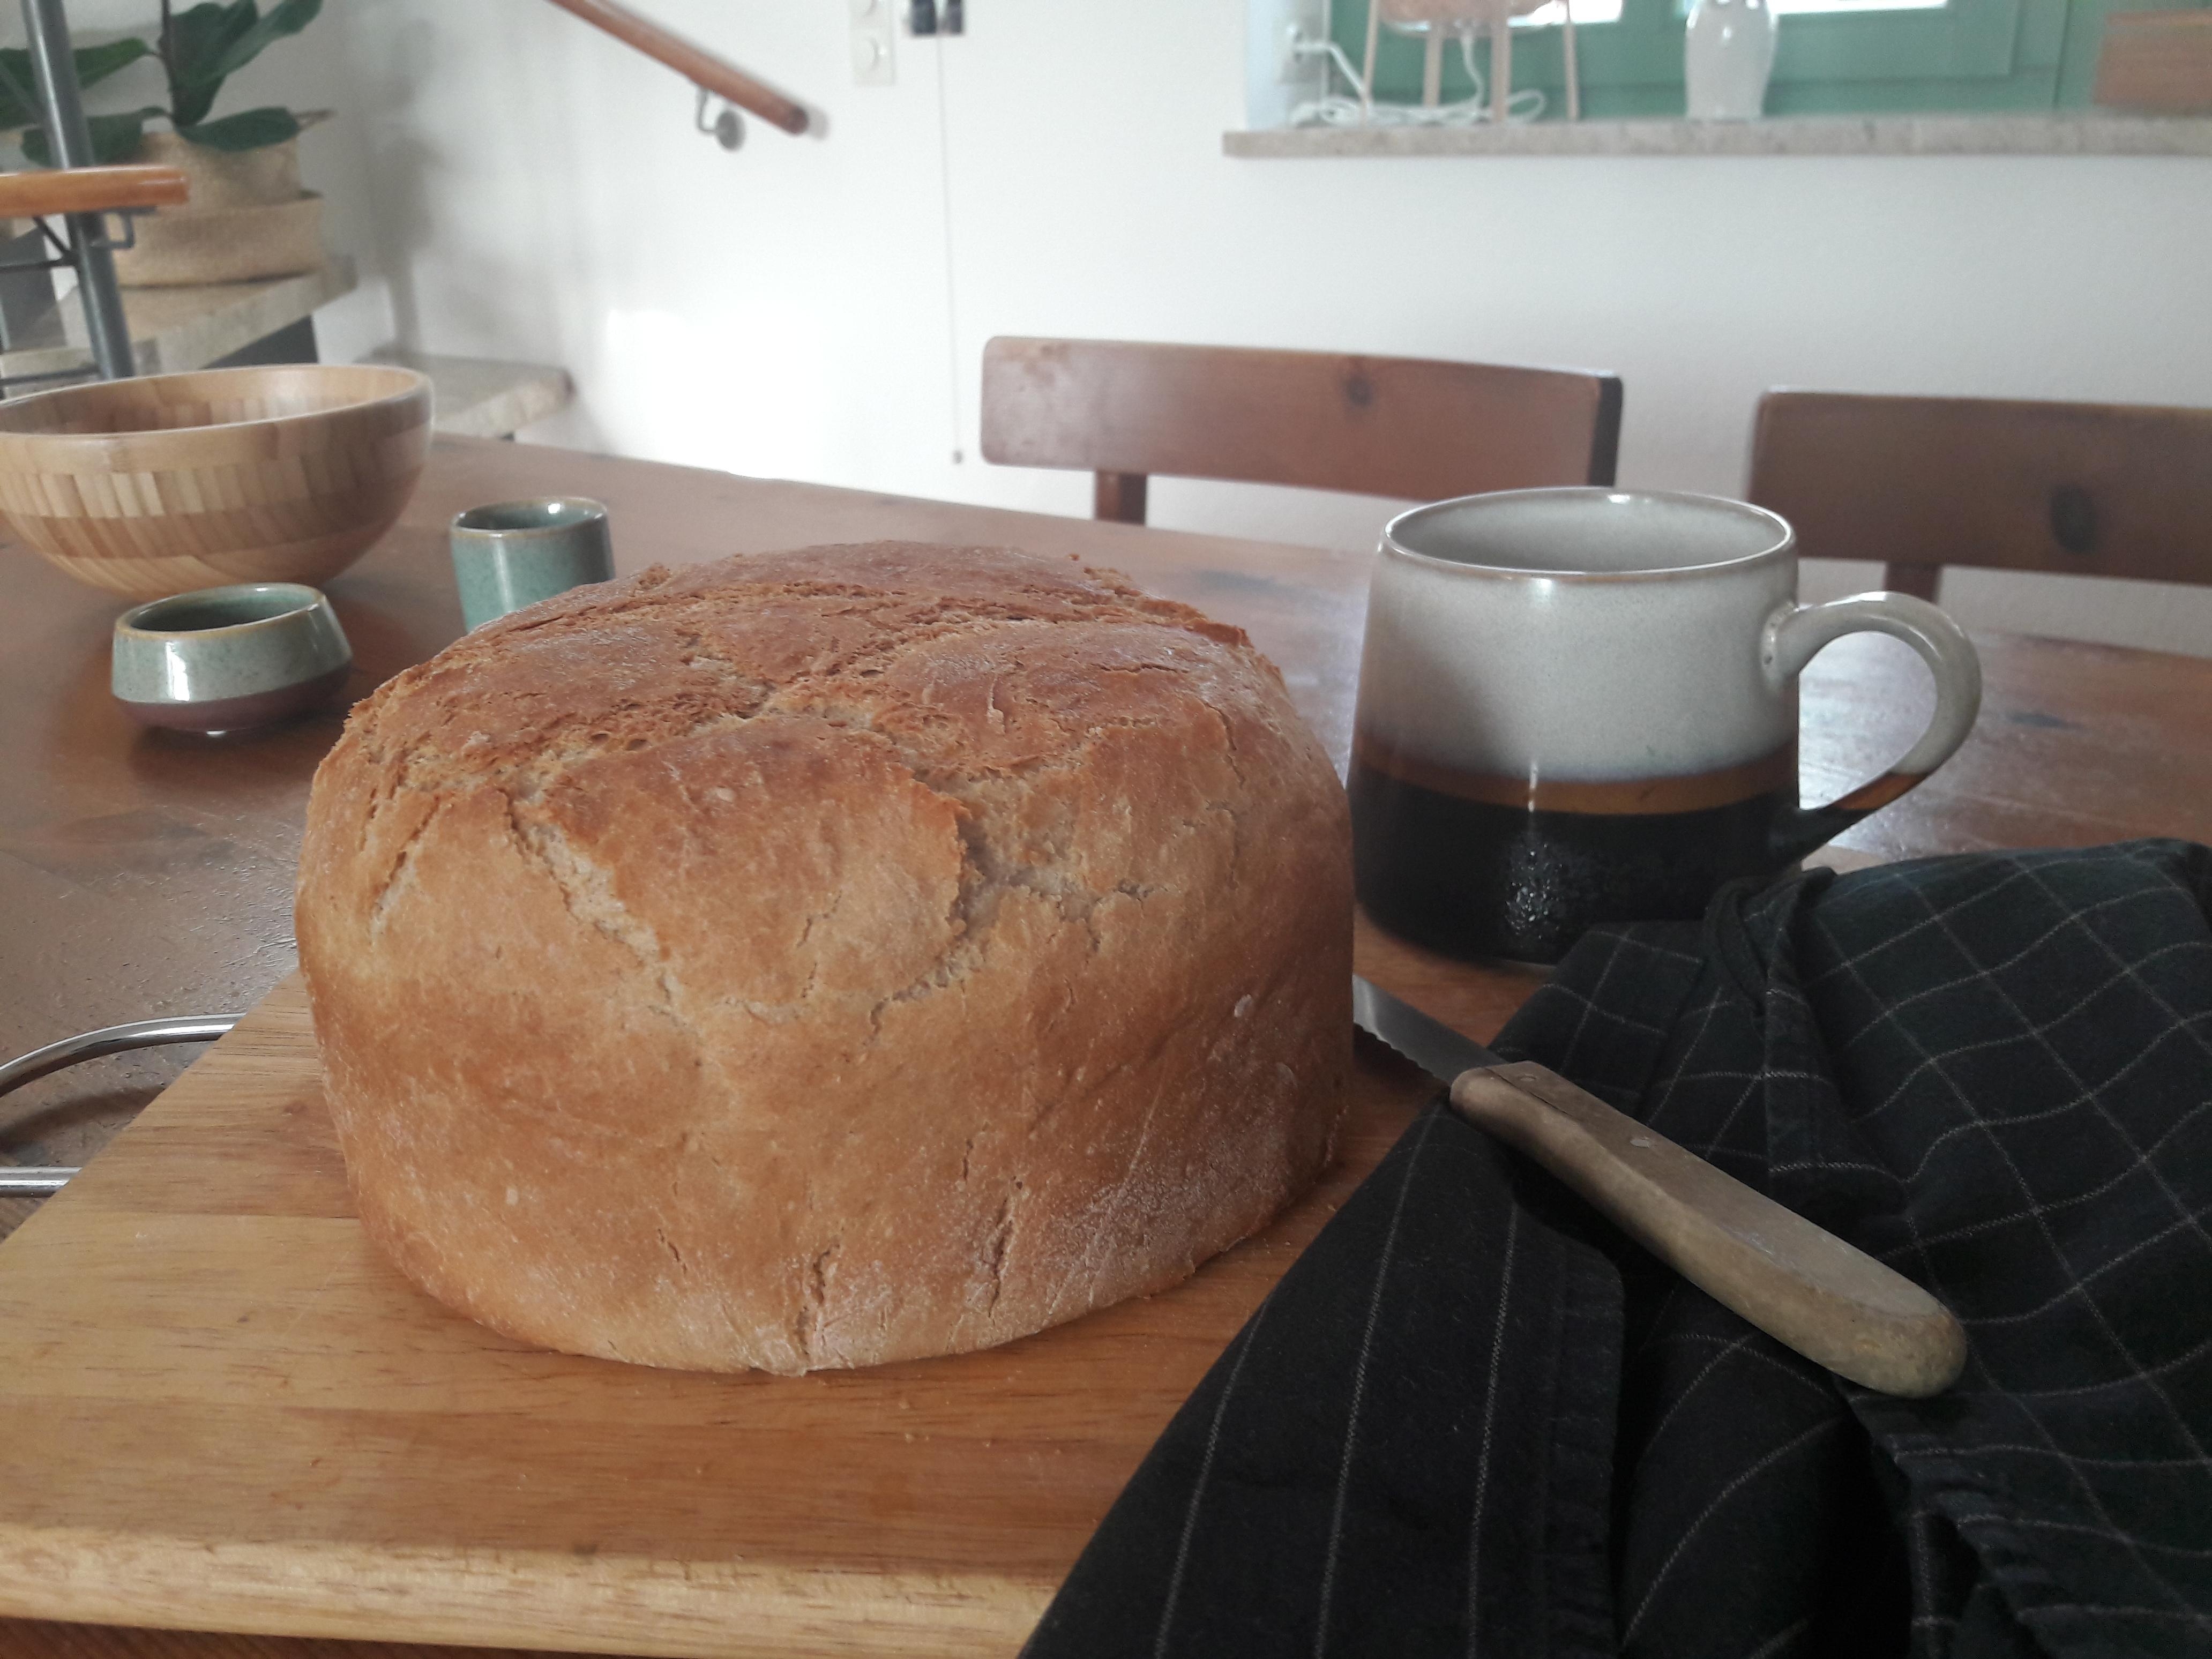 Heute mal selbstgebackenes Brot statt Blumen😉 ...
#freshbreadfriday #esszimmer #esstisch #herbst #hygge 
